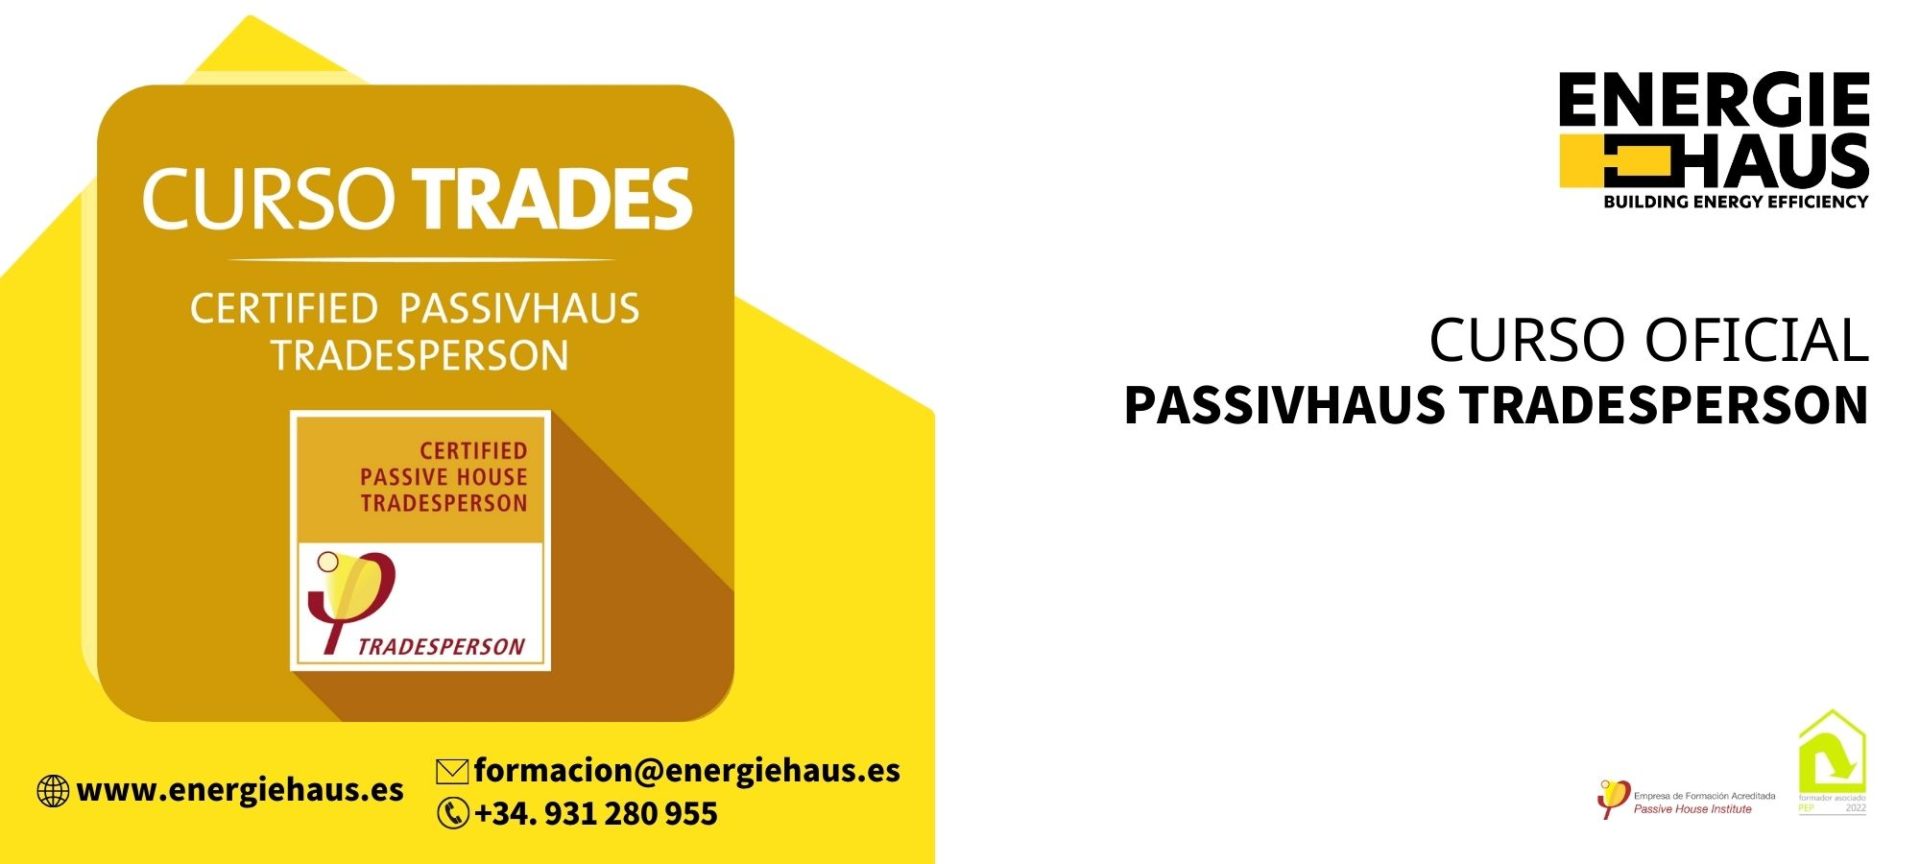 Energiehaus: 2023 - Tradesperson Online y Streaming con Masterclass presencial (opcional)